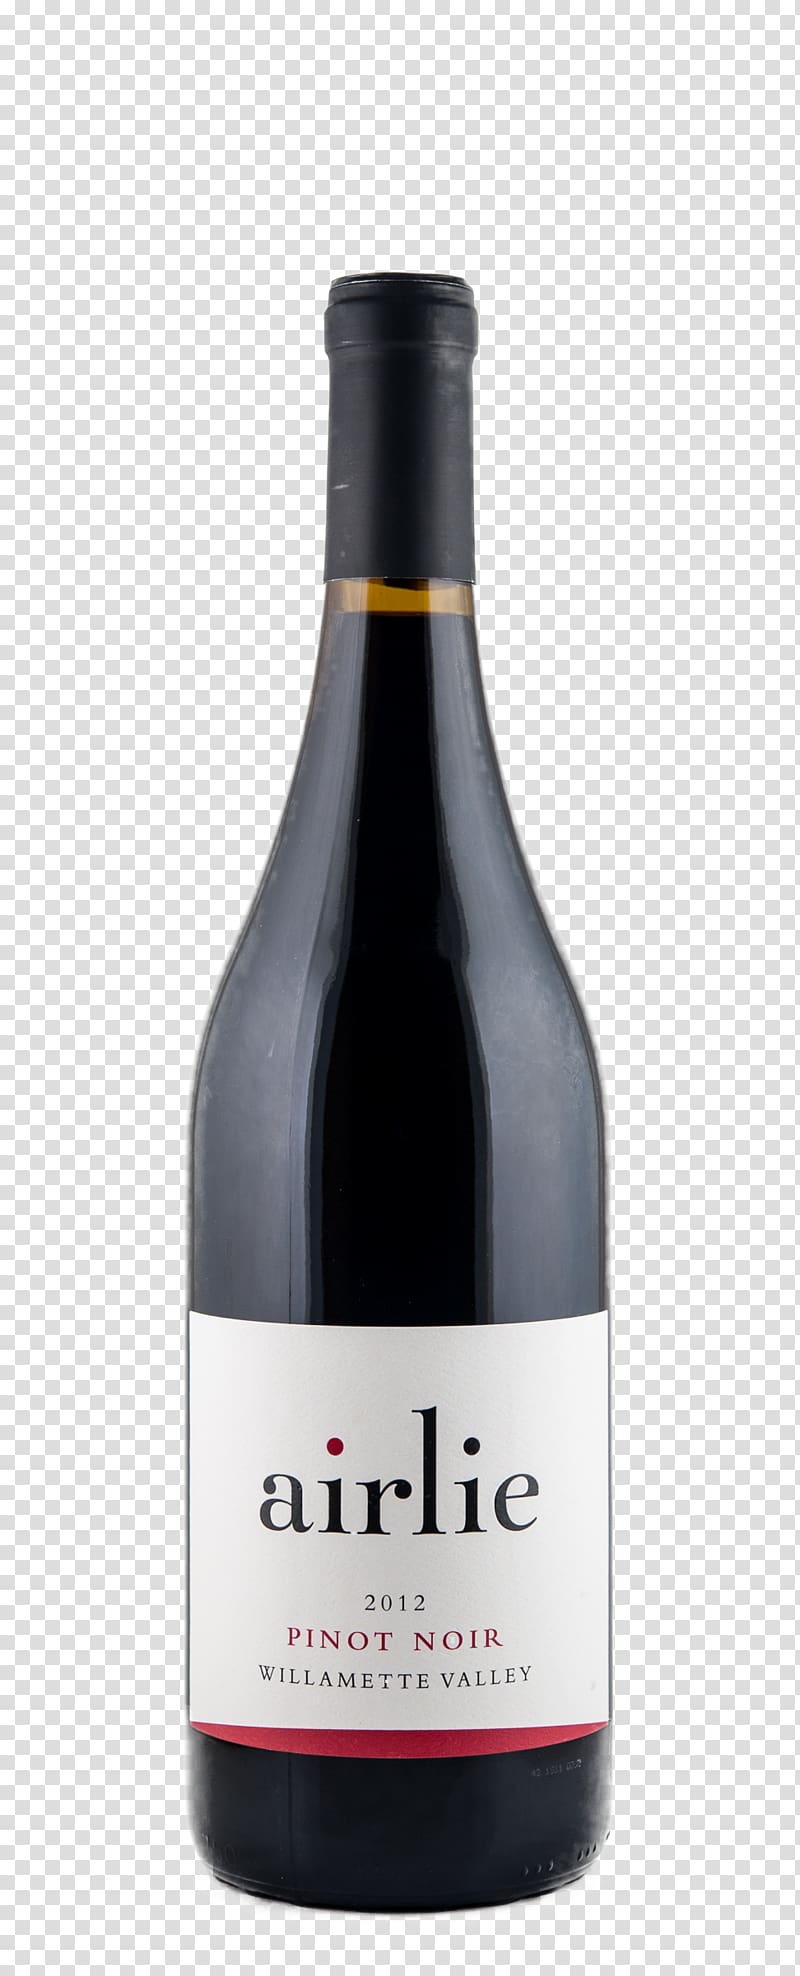 Wine Pinot noir Weingut Wagentristl Muscat Château de Targé, wine transparent background PNG clipart